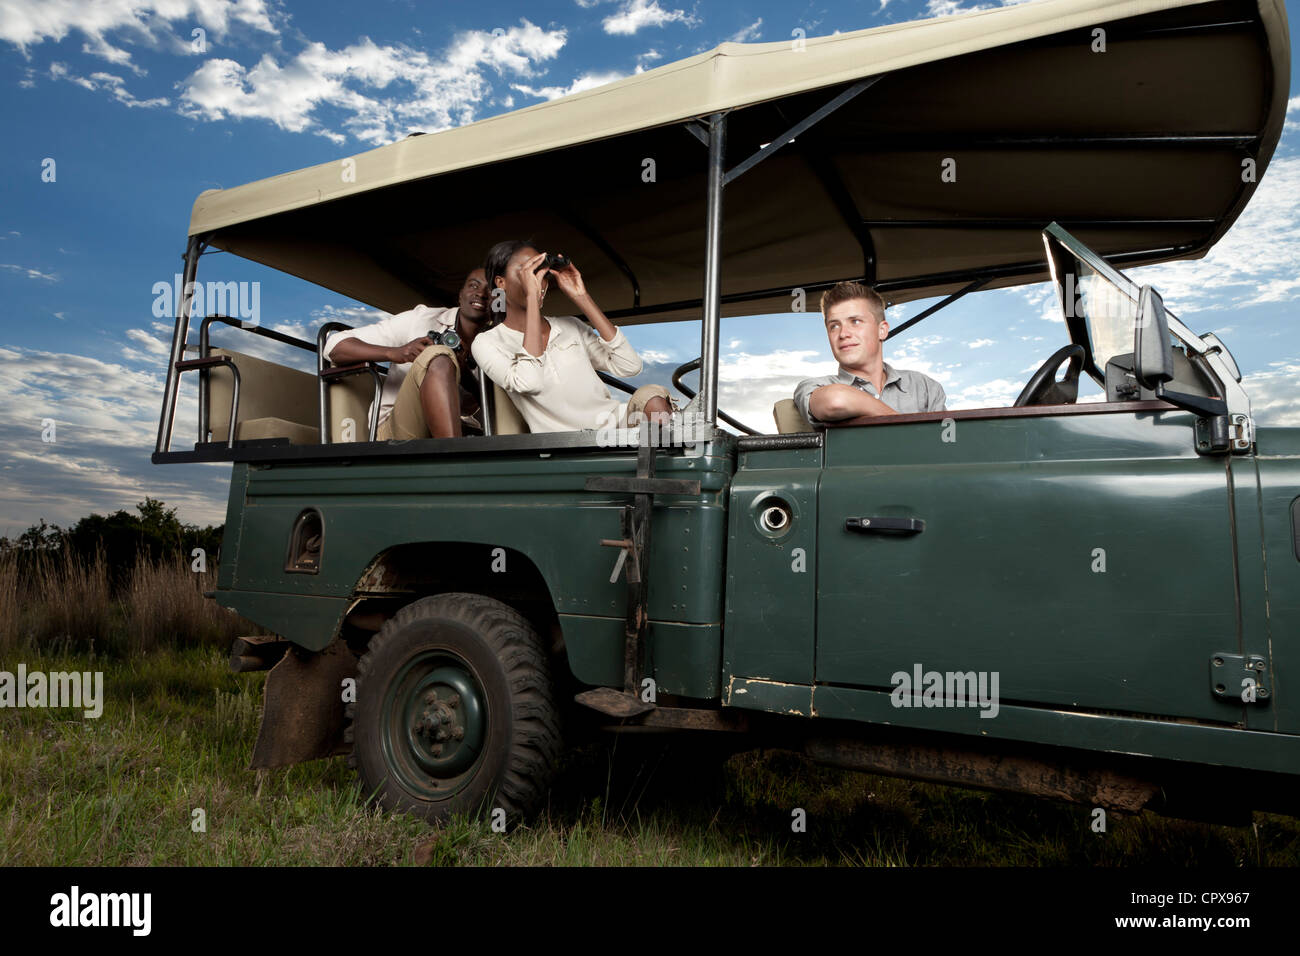 Una pareja africana sentados en un juego de visualización vehículo buscando animales Foto de stock